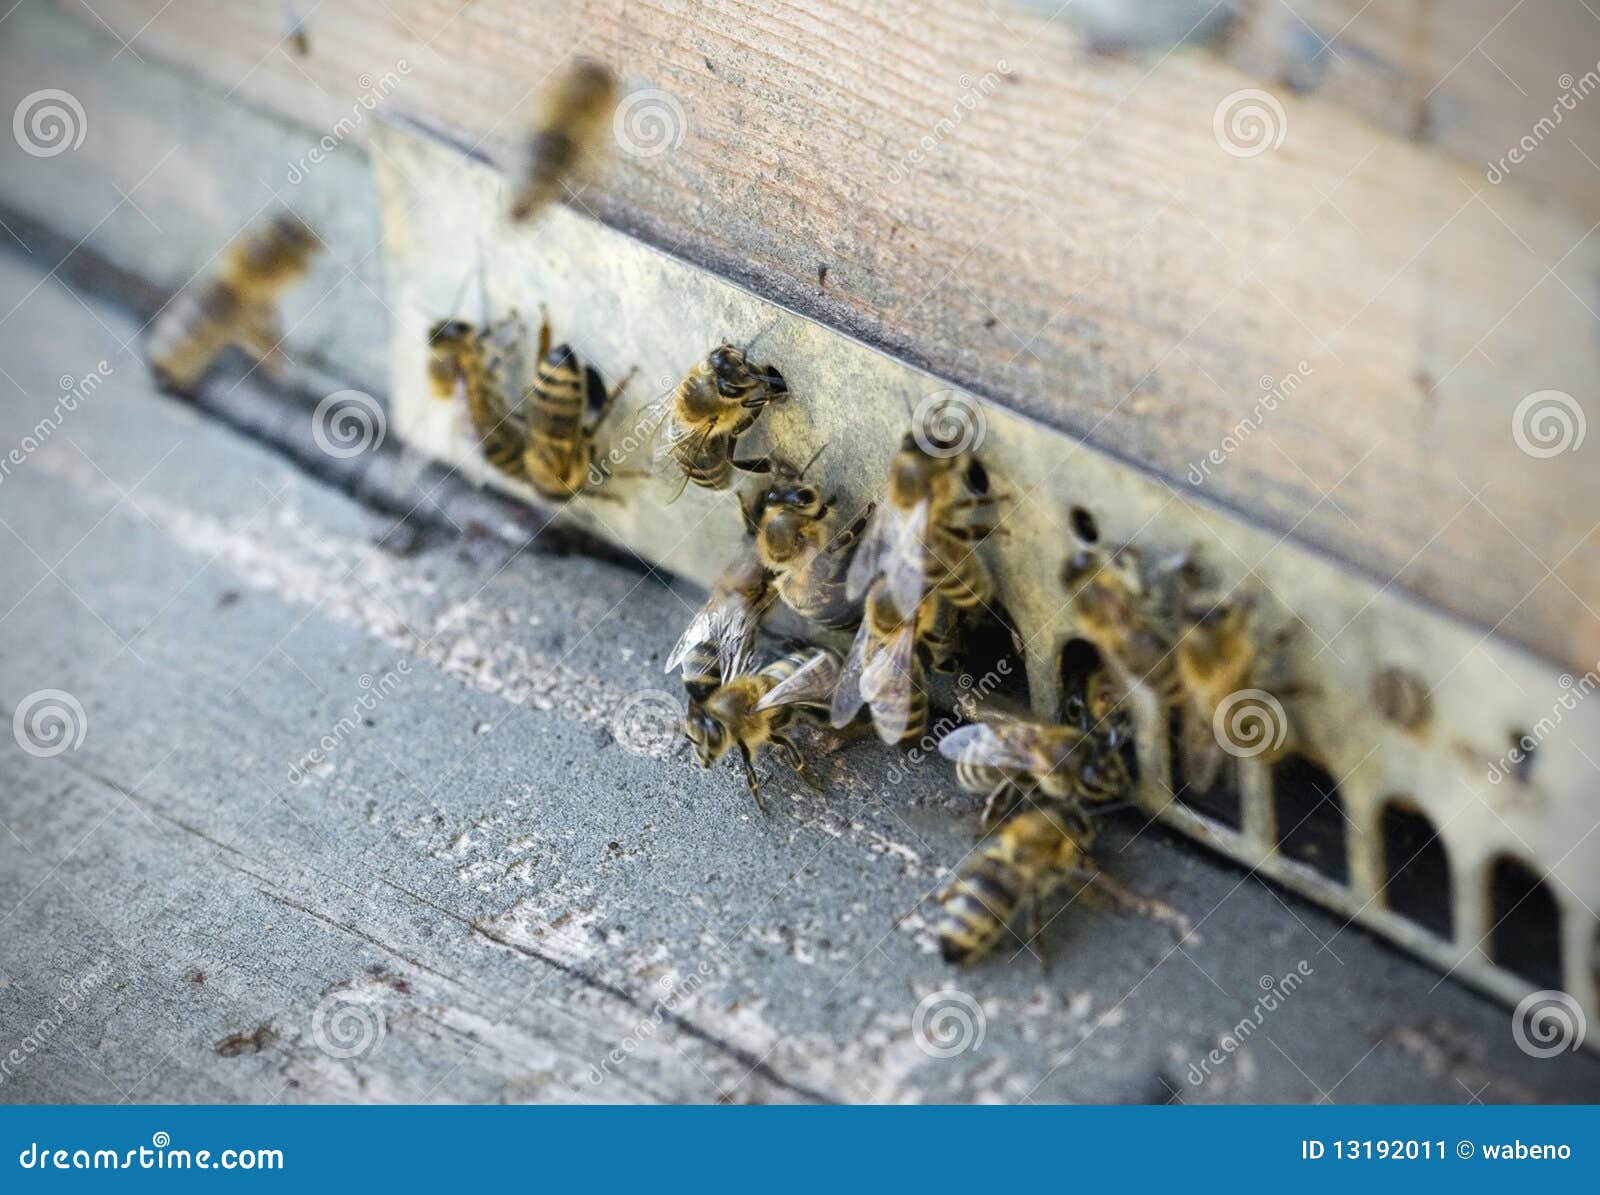 Чего боятся пчелы как от них избавиться. Пчелиный дверь. Земляные пчелы на даче. Отравление пчел. Фотографии пчелы снятая на телефон.